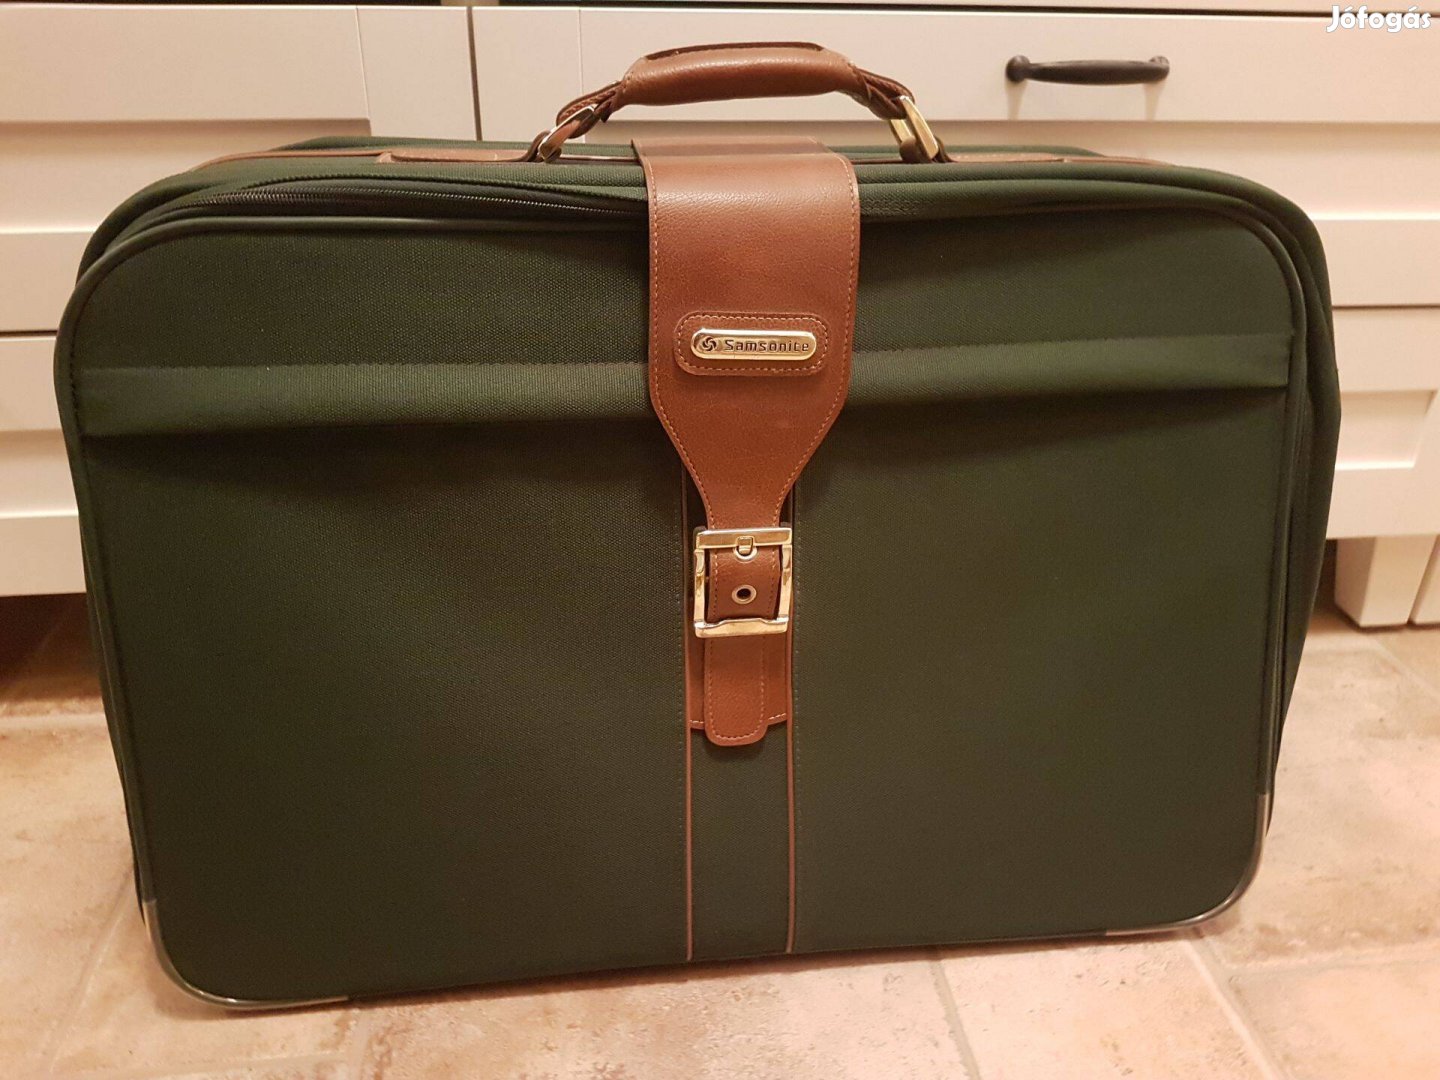 Samsonite gurulós kerekes bőrönd, koffer, utazótáska lakattal, zárható